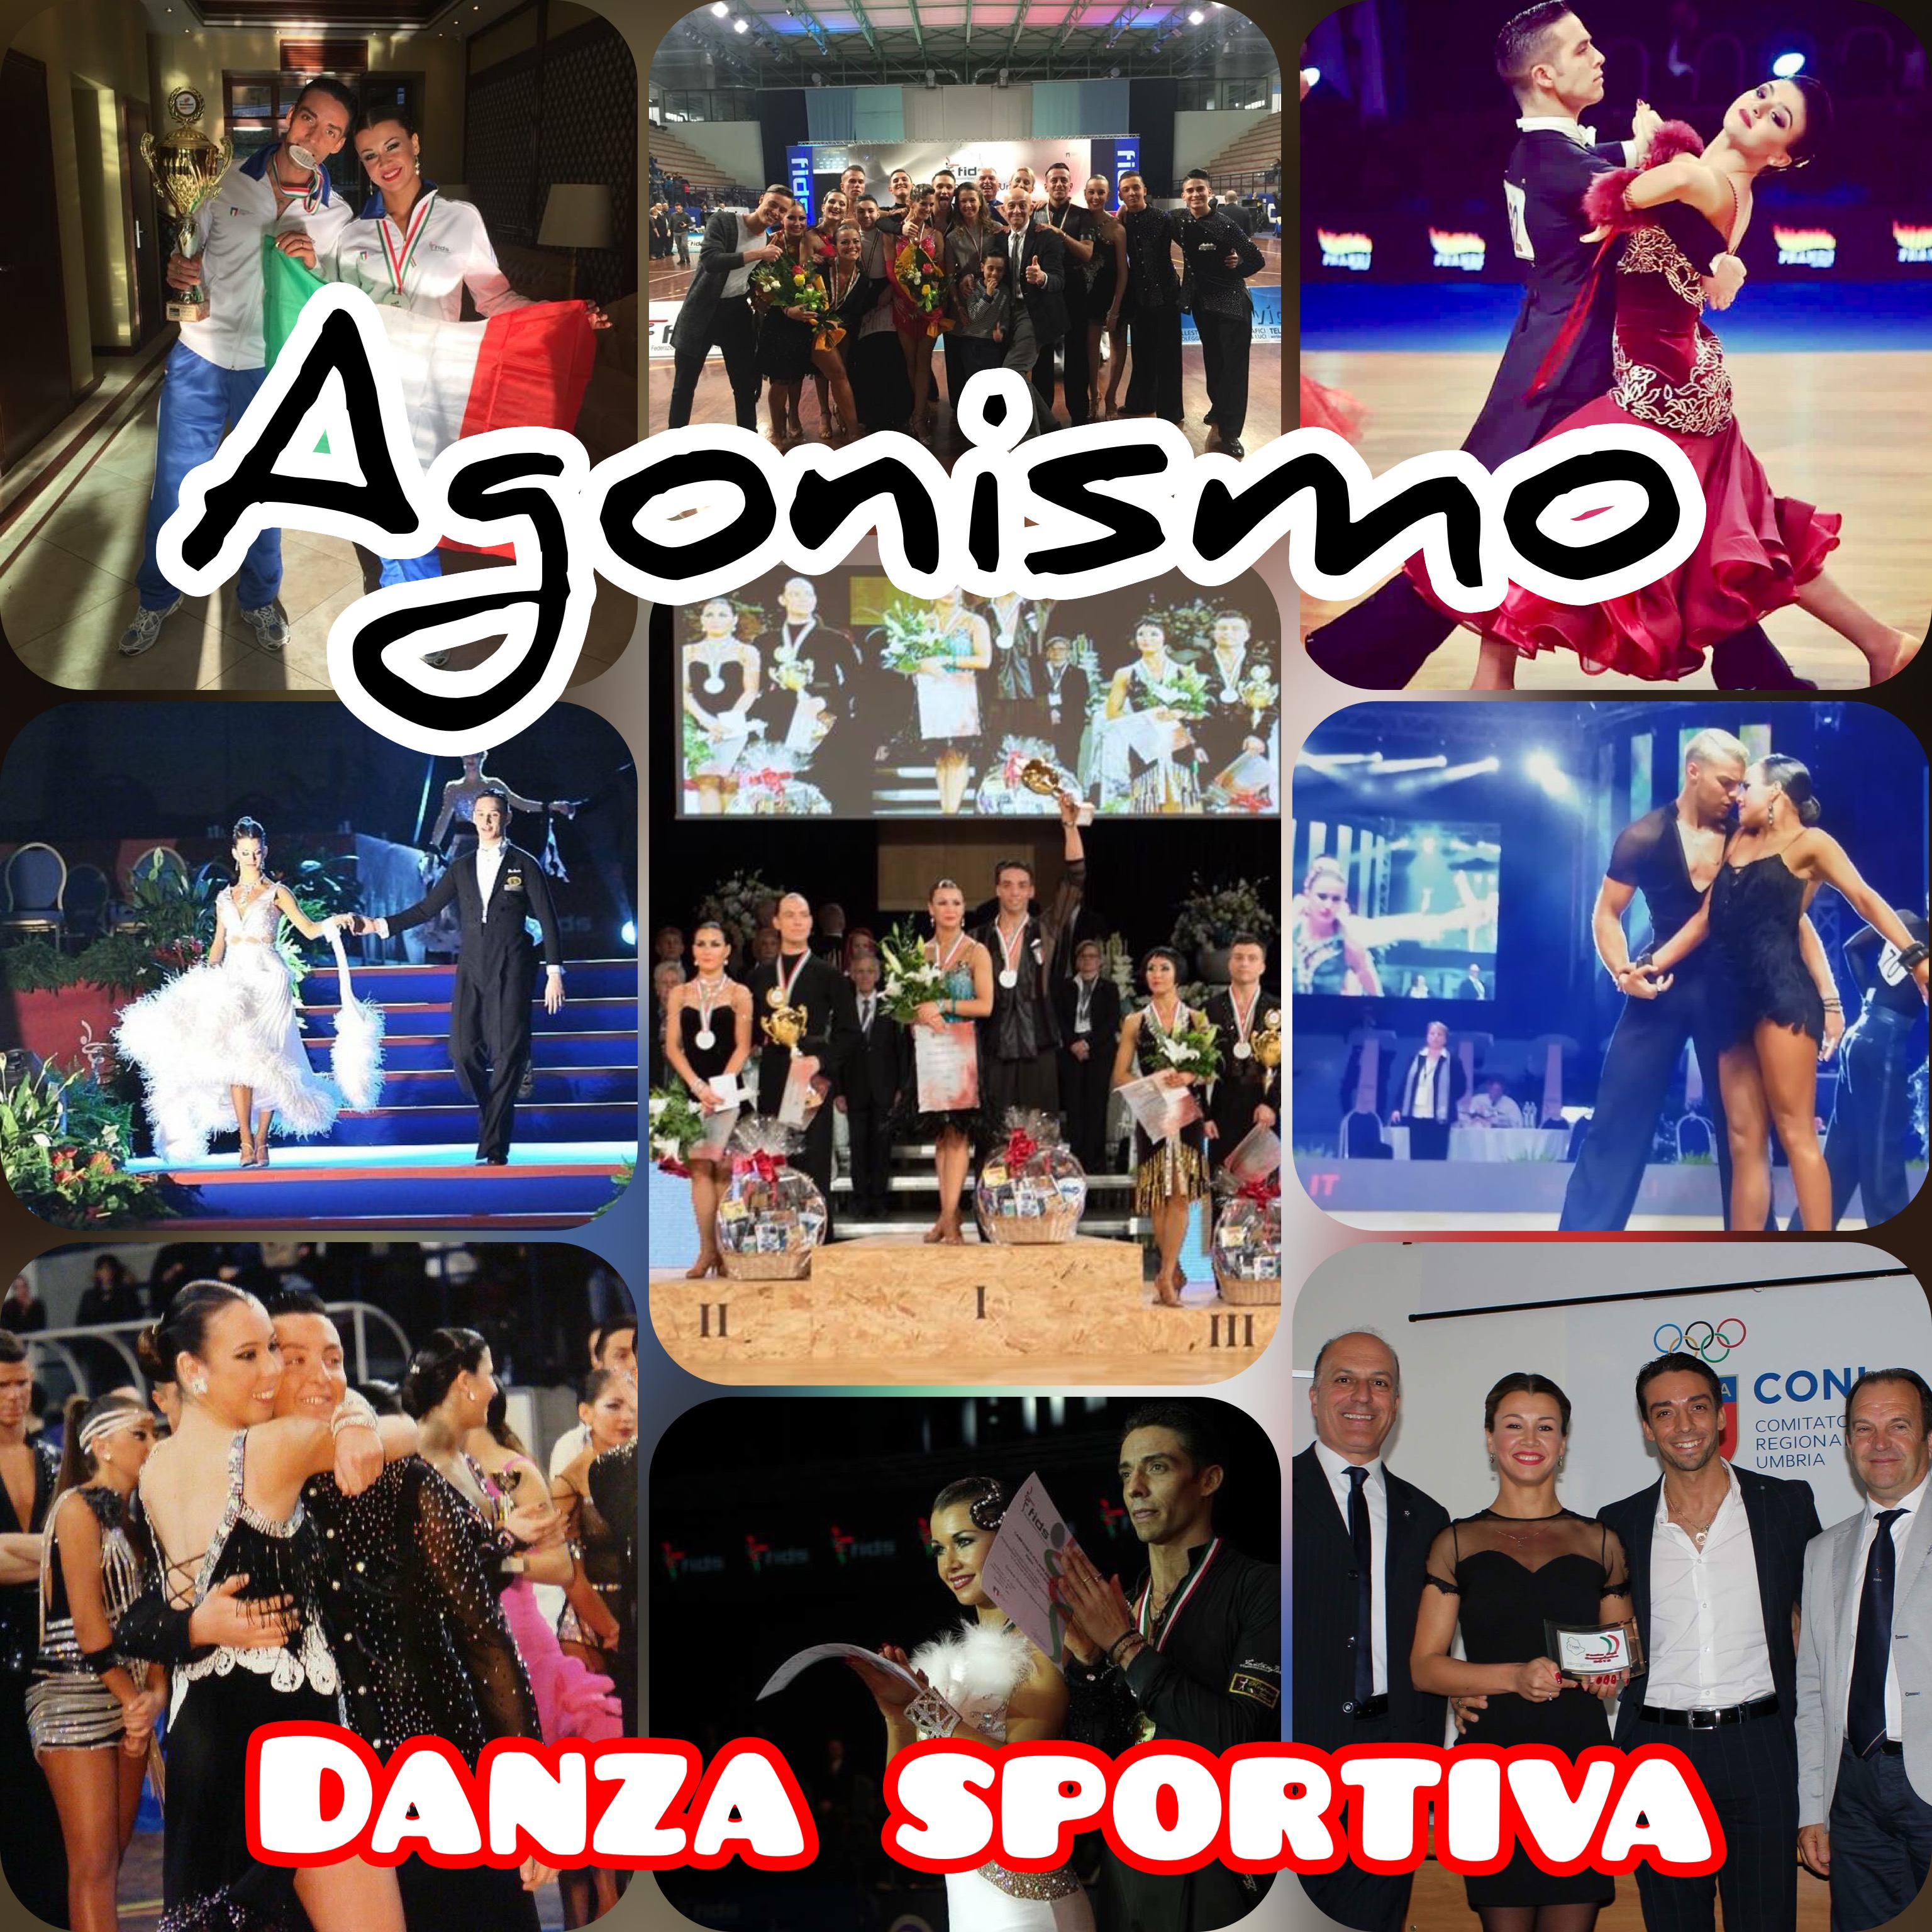 AGONISMO - Danza sportiva